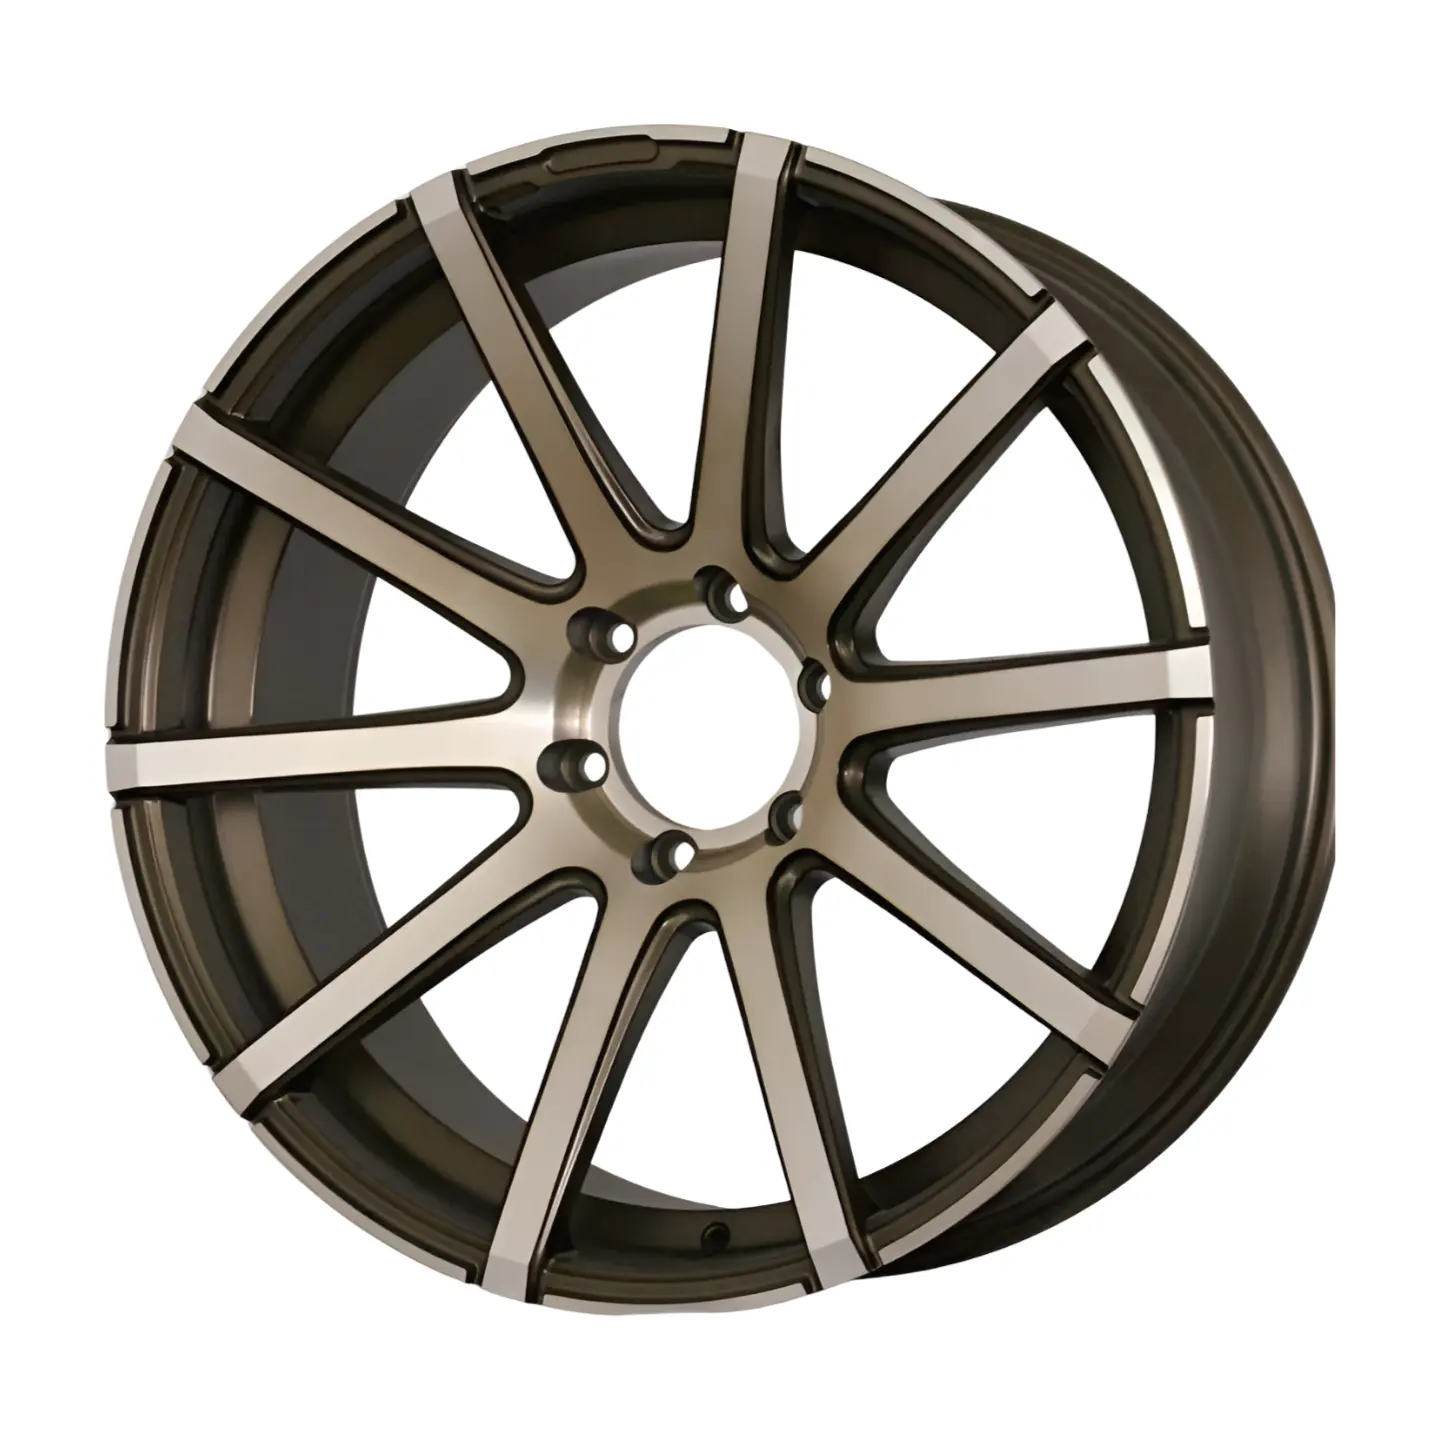 Jy 20-дюймовые колеса подходят Для 20-дюймовых шин, глубокий дизайн тарелки, можно использовать на всех автомобилях